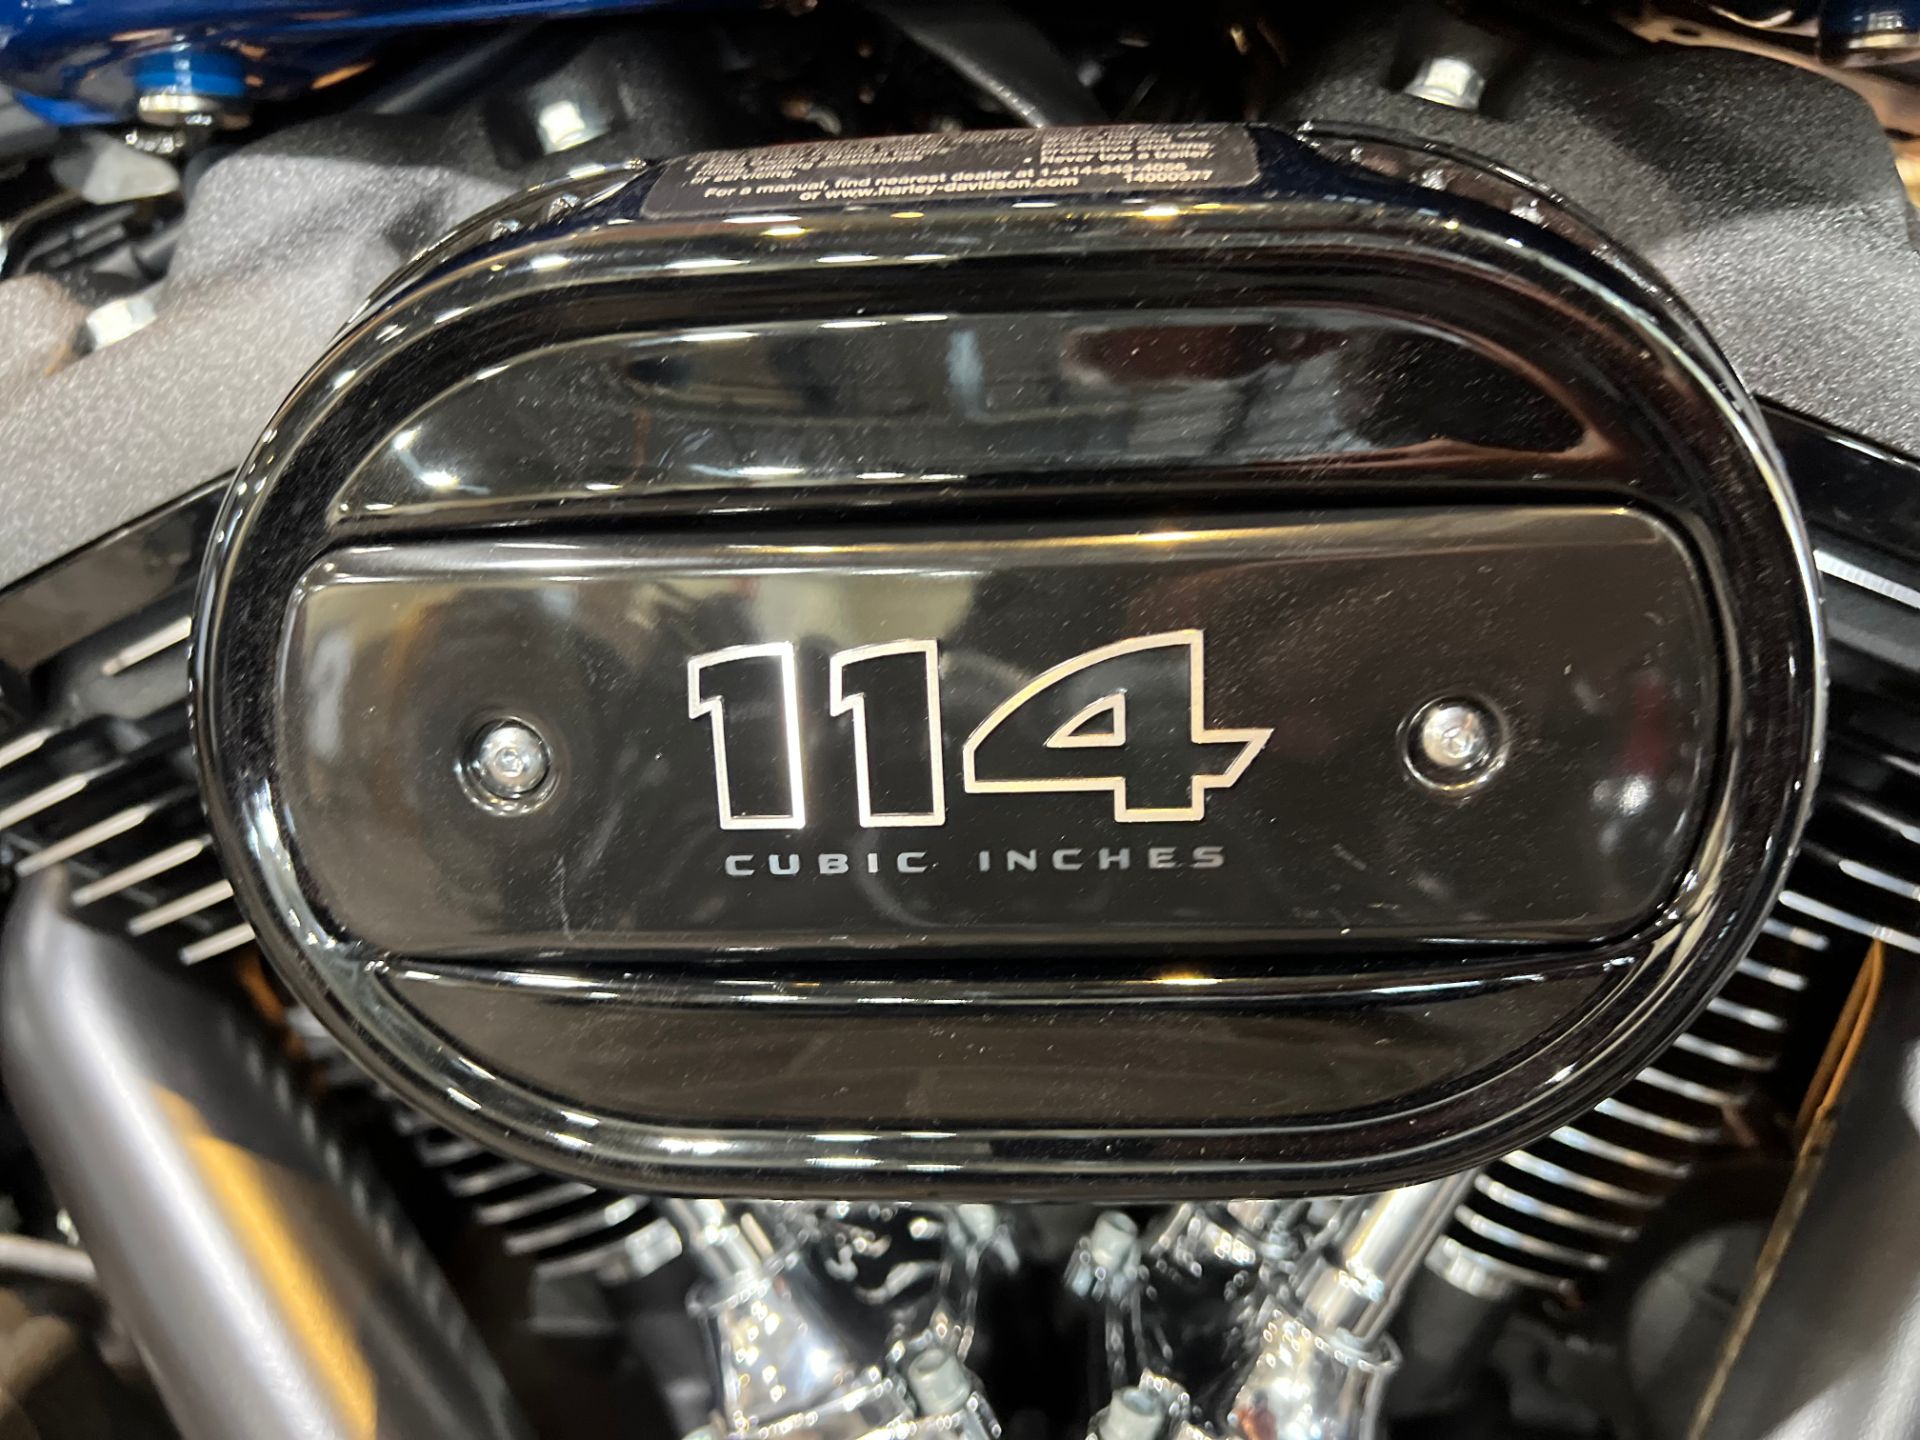 2023 Harley-Davidson Heritage Classic 114 in Logan, Utah - Photo 5